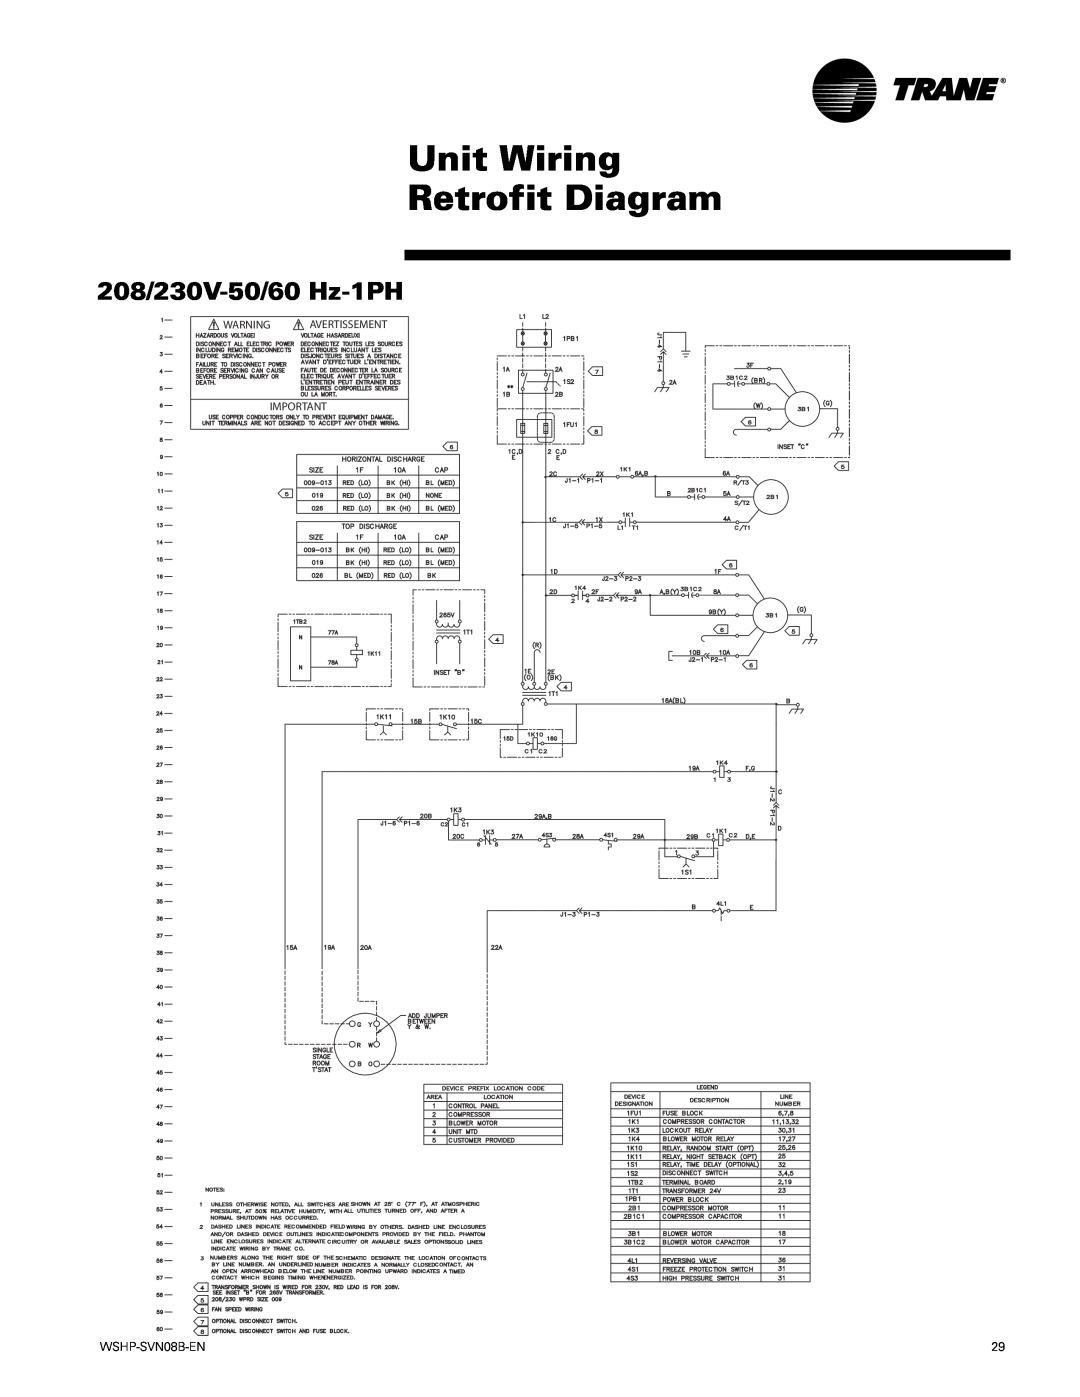 Trane GETB manual Unit Wiring Retrofit Diagram, 208/230V-50/60 Hz-1PH 